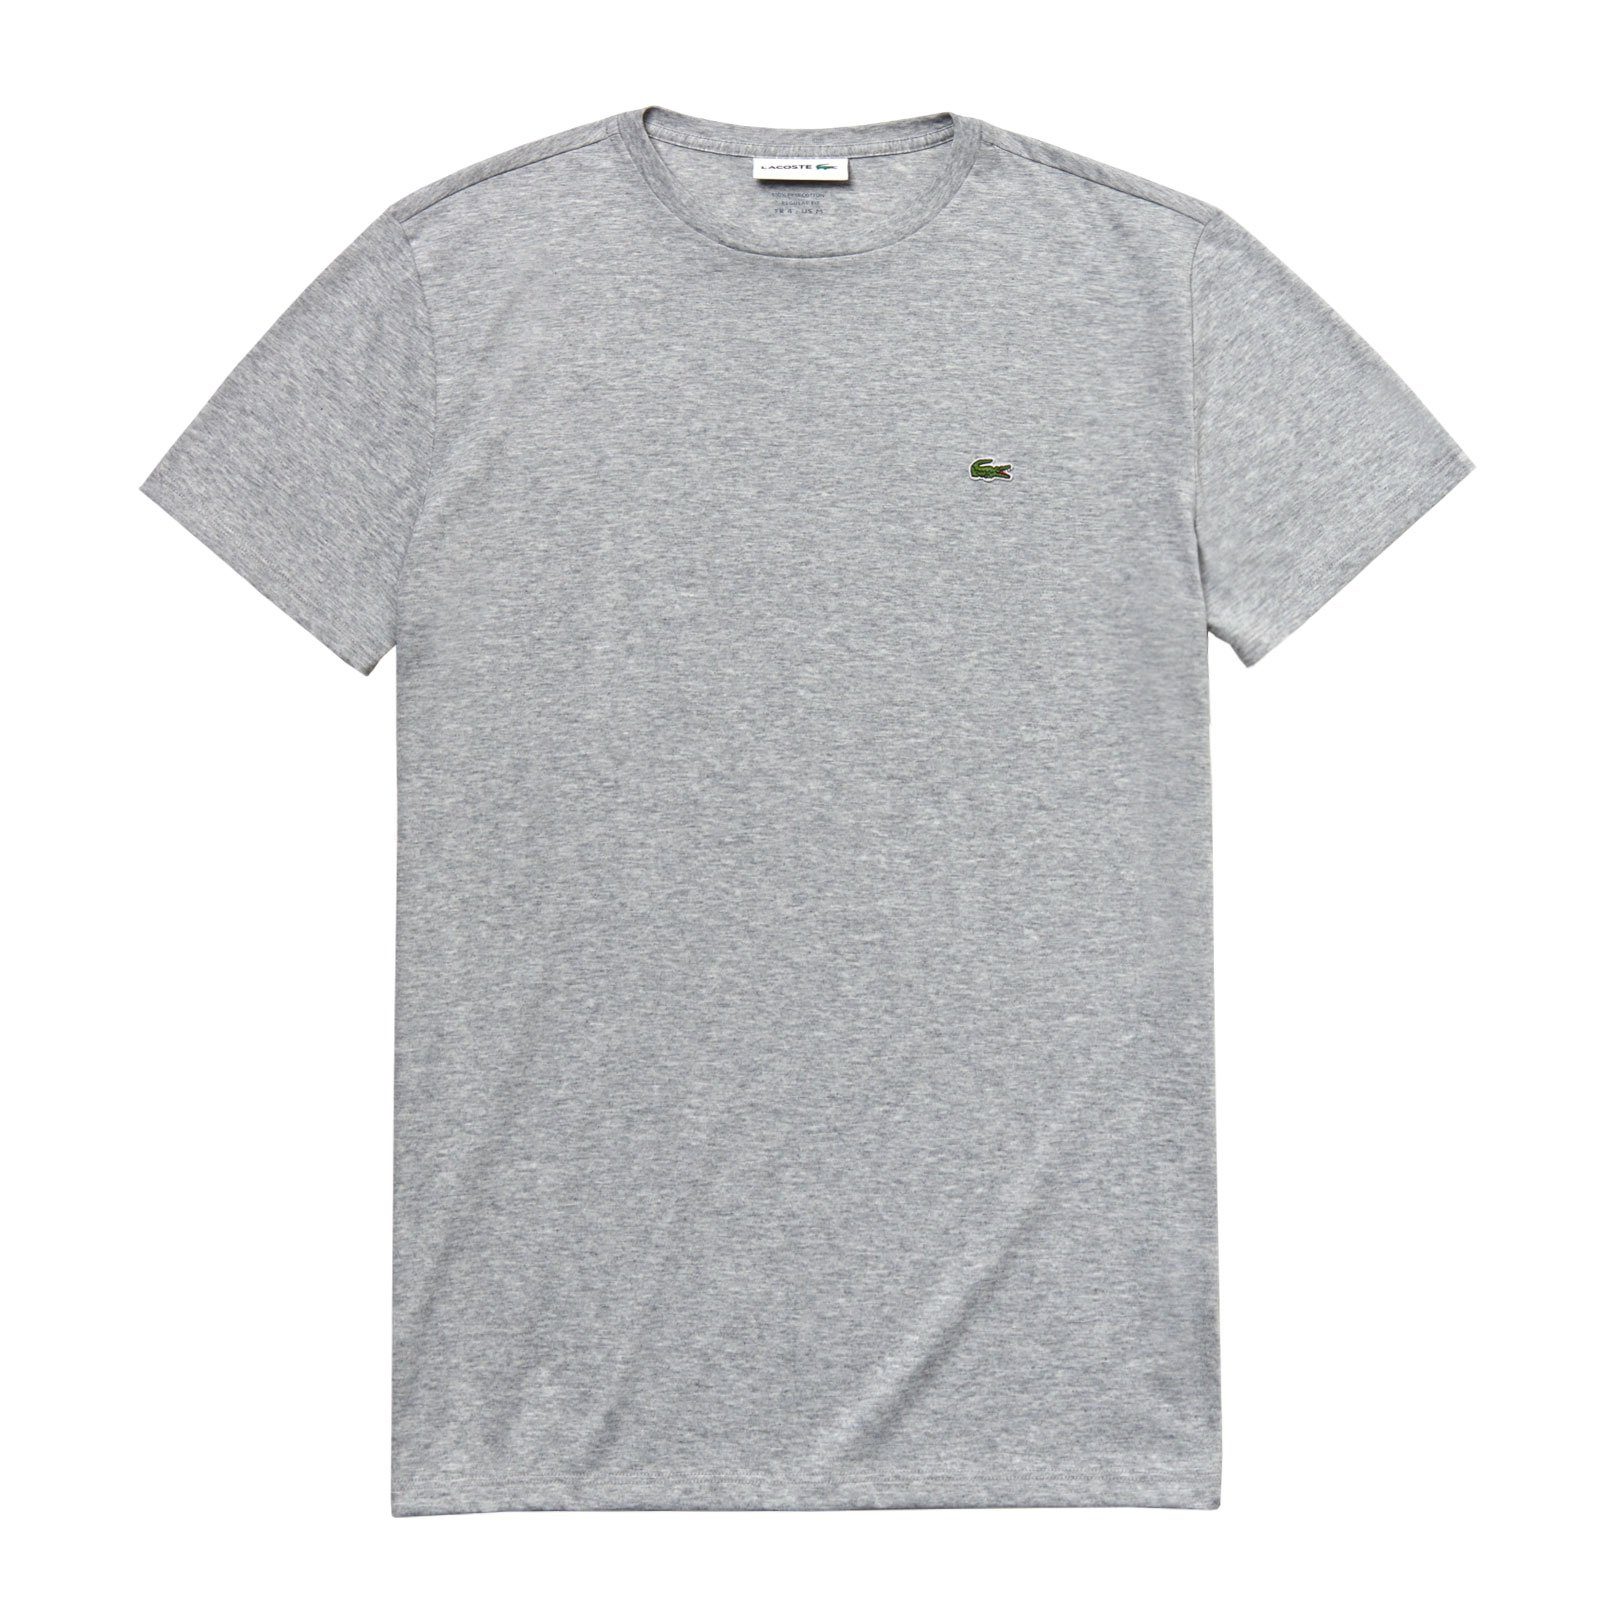 Lacoste T-Shirt Crew Neck Cotton mit kleinem Krokodil auf der Brust CCA grey melange